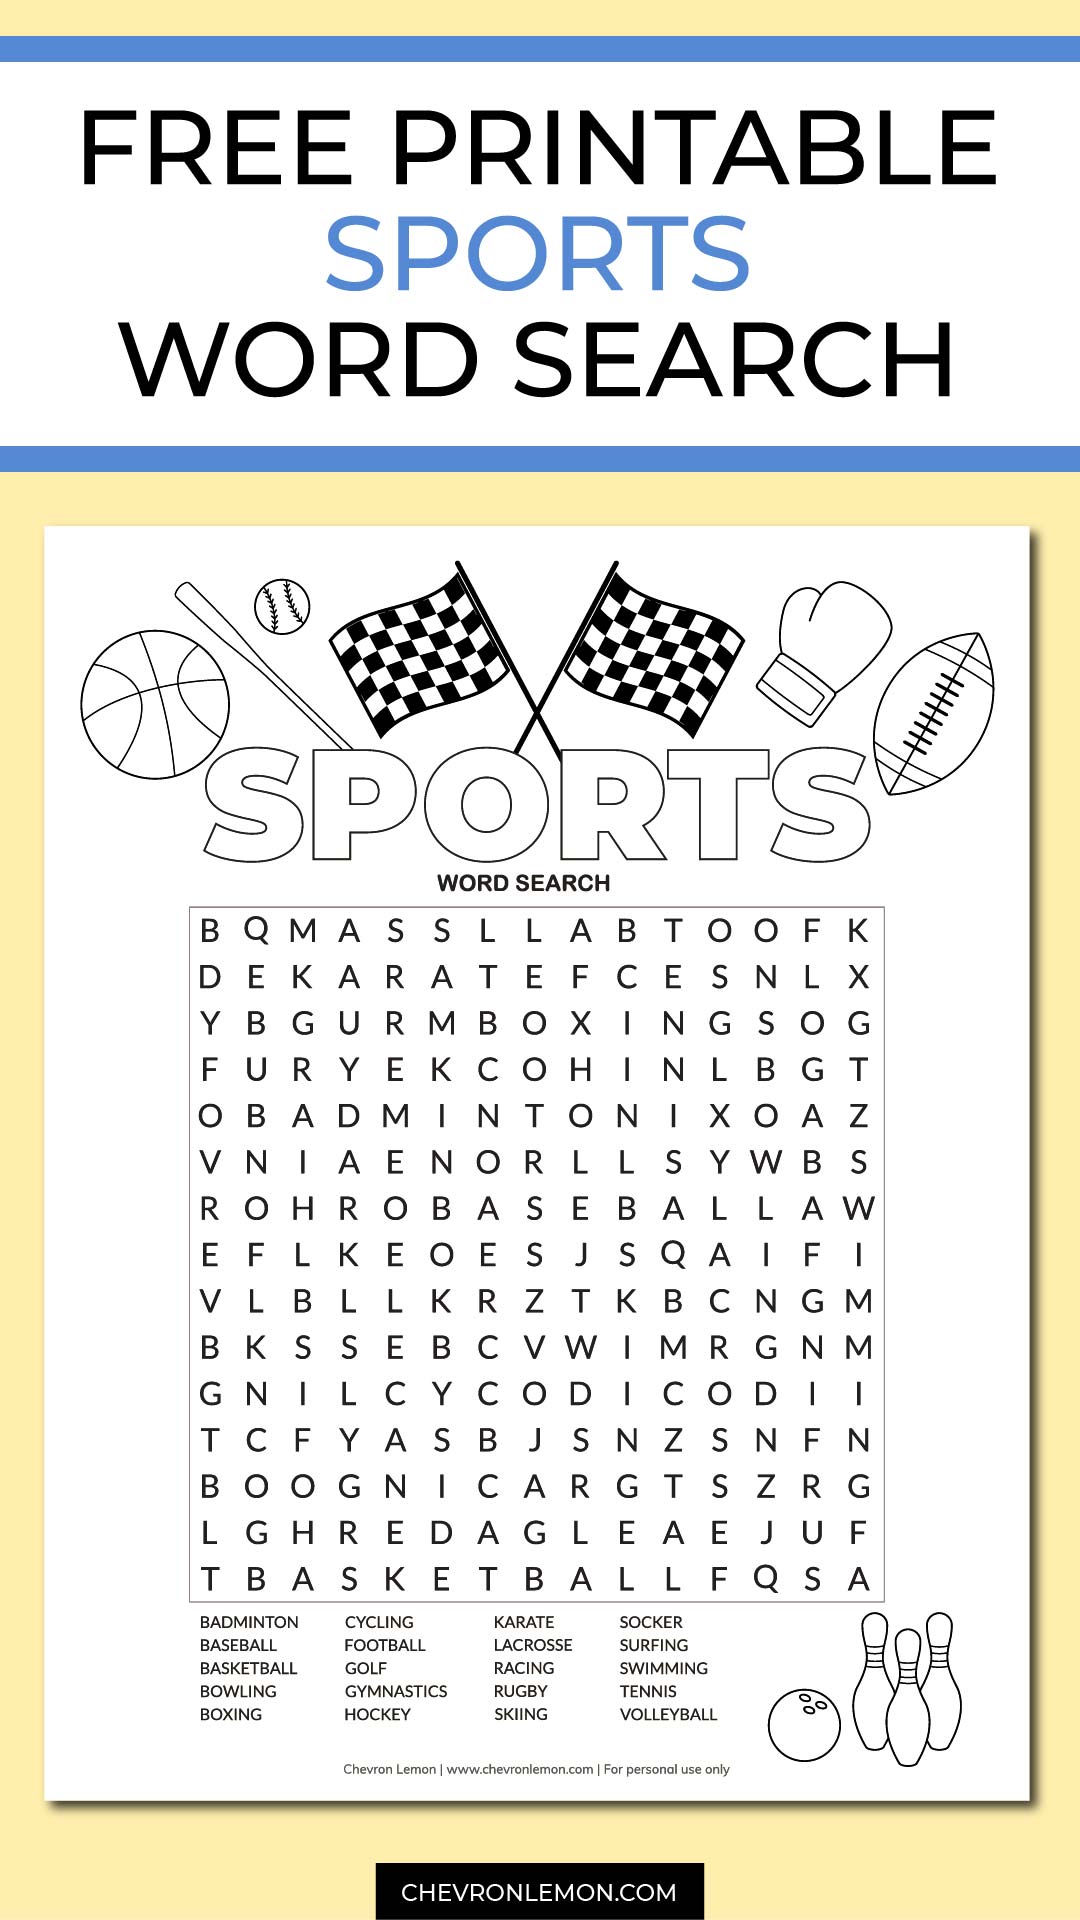 Free printable sports word search puzzle Chevron Lemon